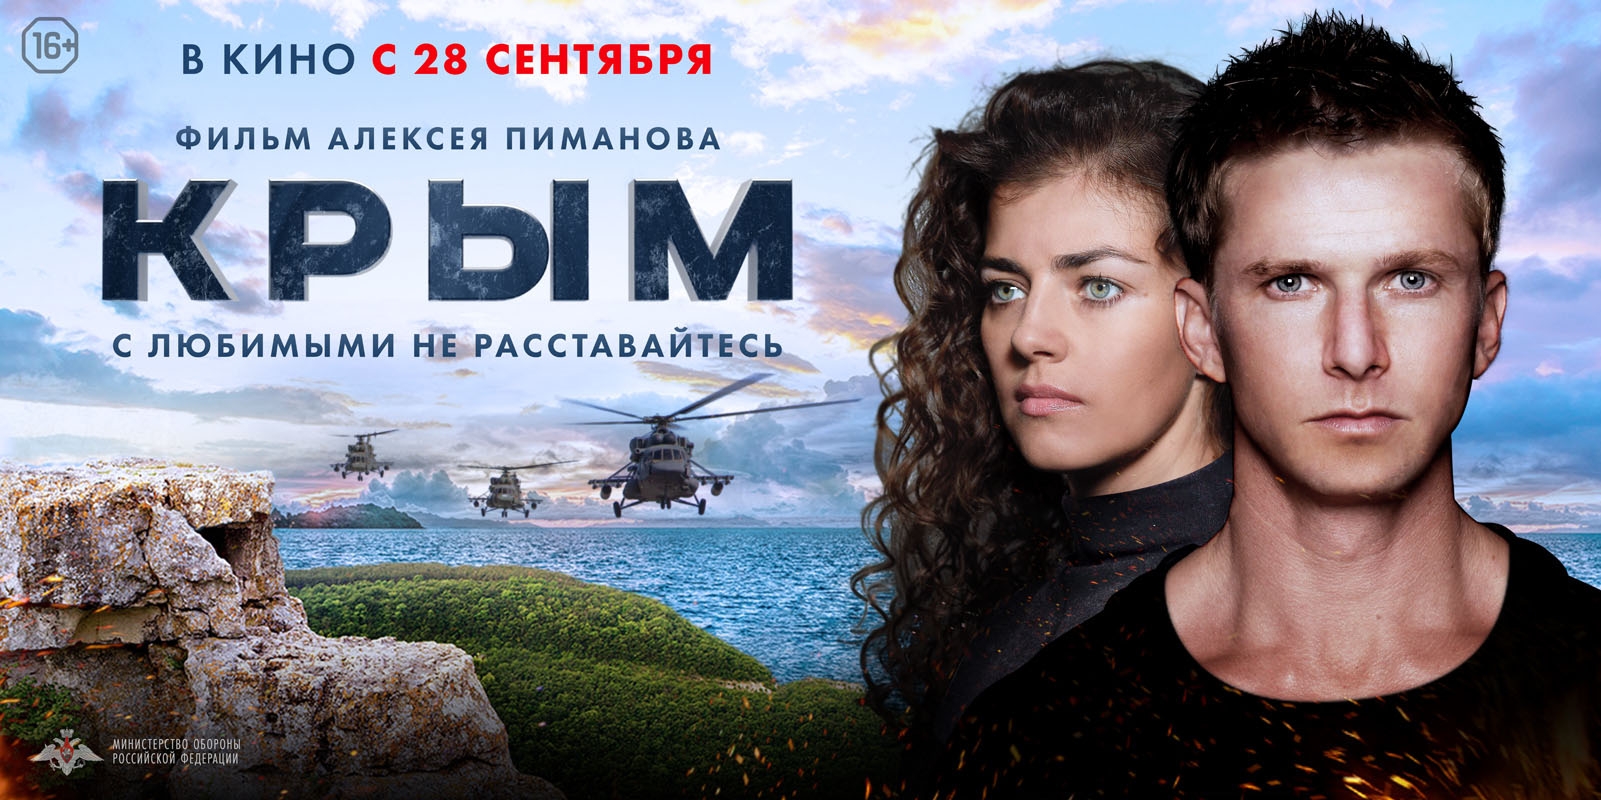 Открытые показы фильма «Крым» начались в кинотеатрах полуострова — видео